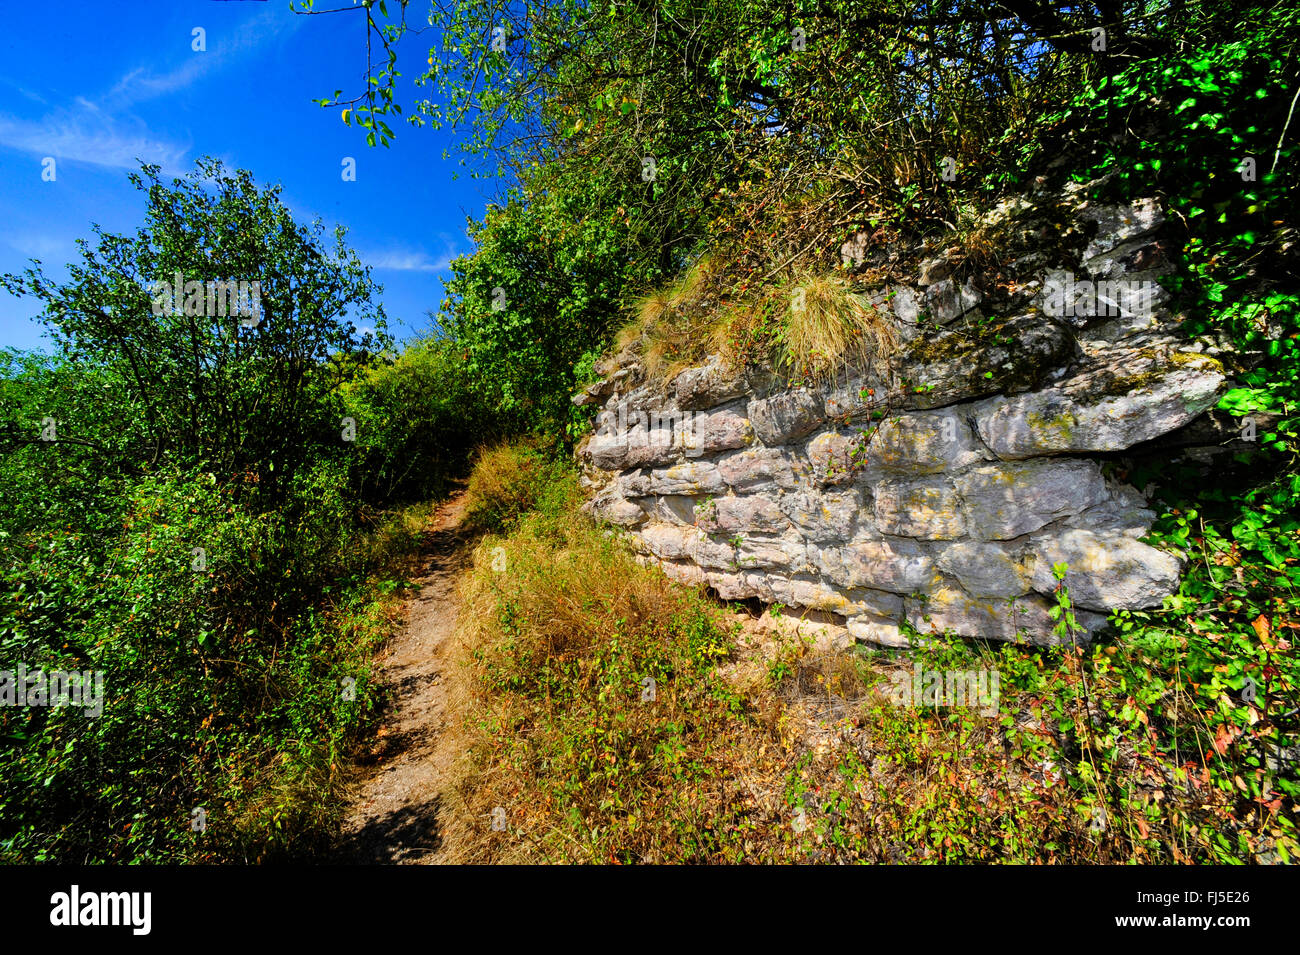 Mur de pierres naturelles dans la vallée de la Nahe, de l'habitat pour les reptiles, l'Allemagne, Rhénanie-Palatinat, Bad Kreuznach Banque D'Images